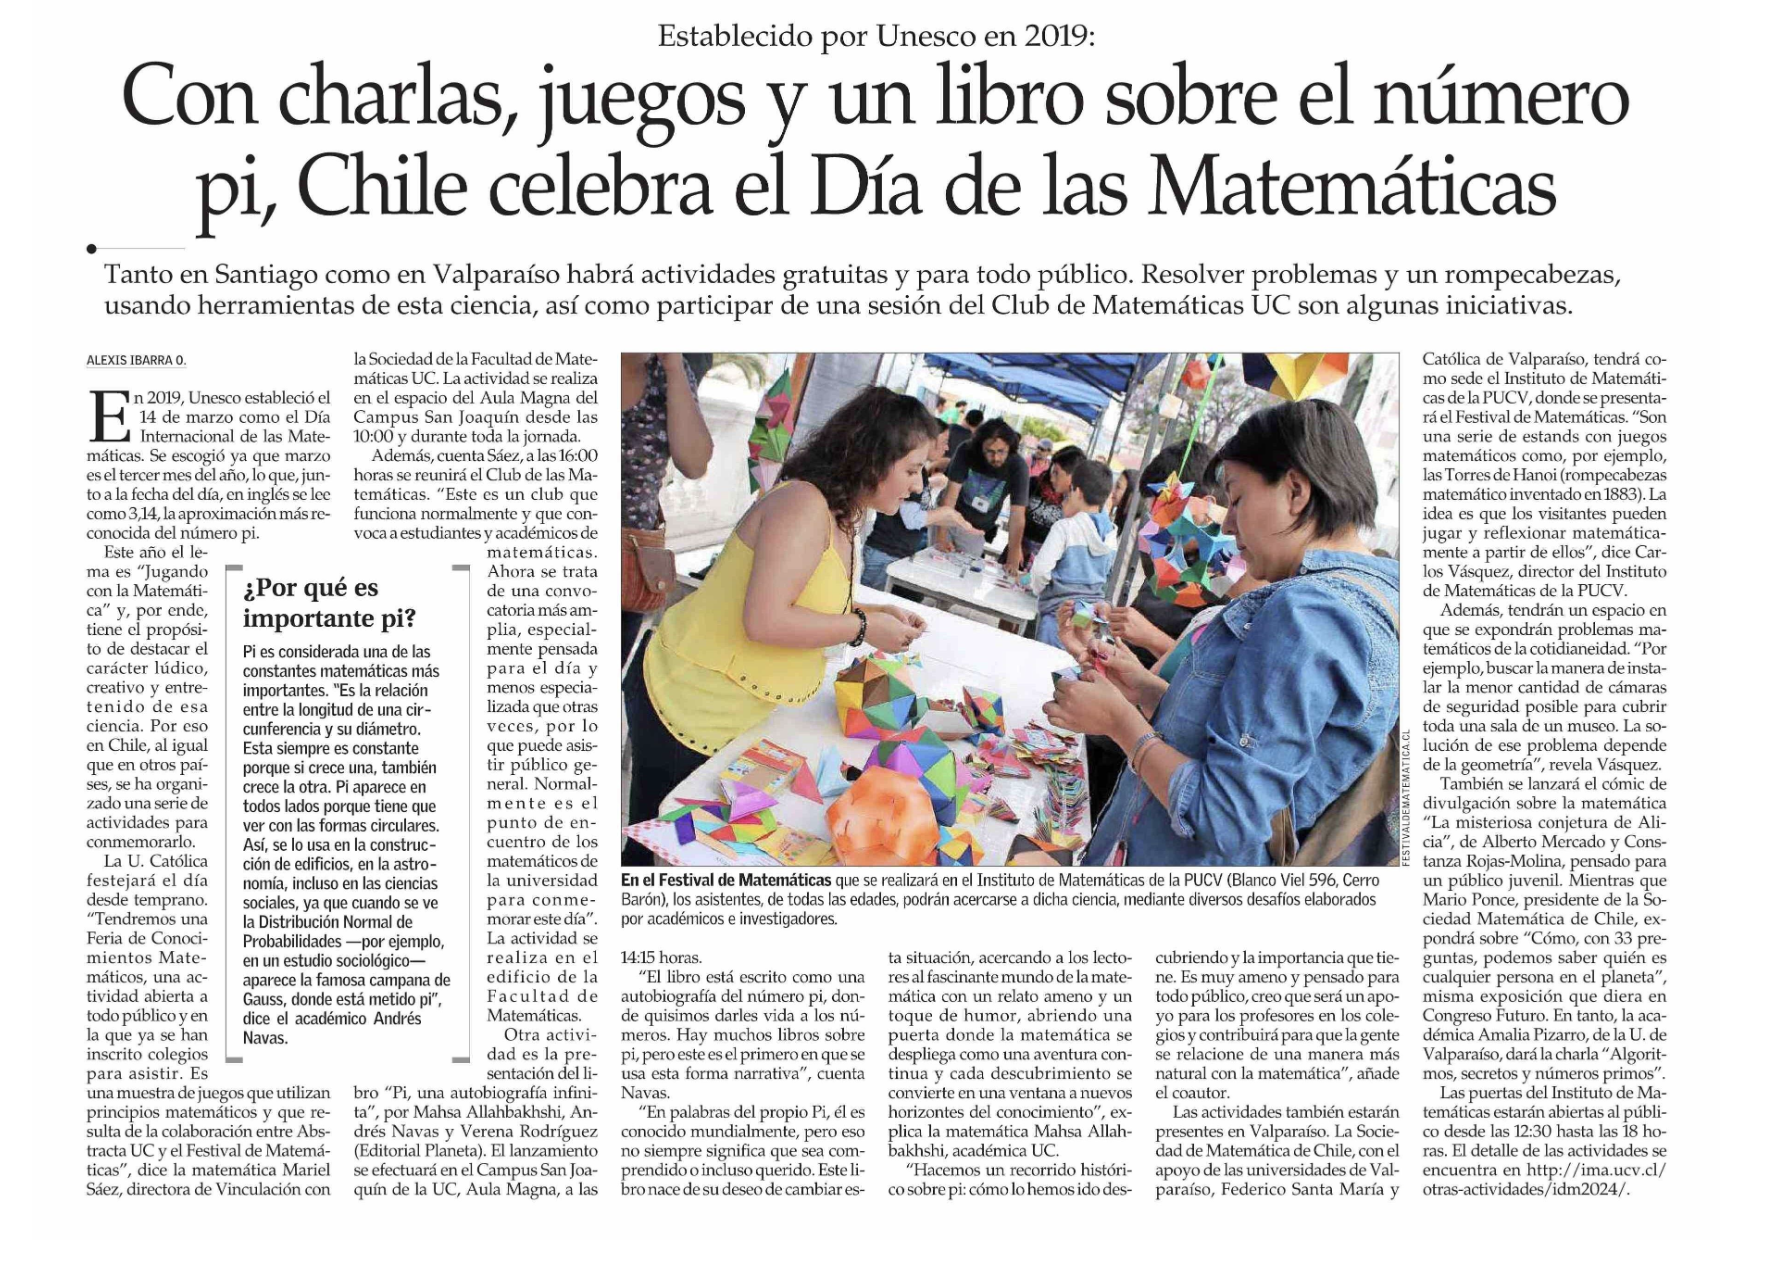 Con charlas, juegos y un libro sobre el número pi, Chile celebra el Día de las Matemáticas